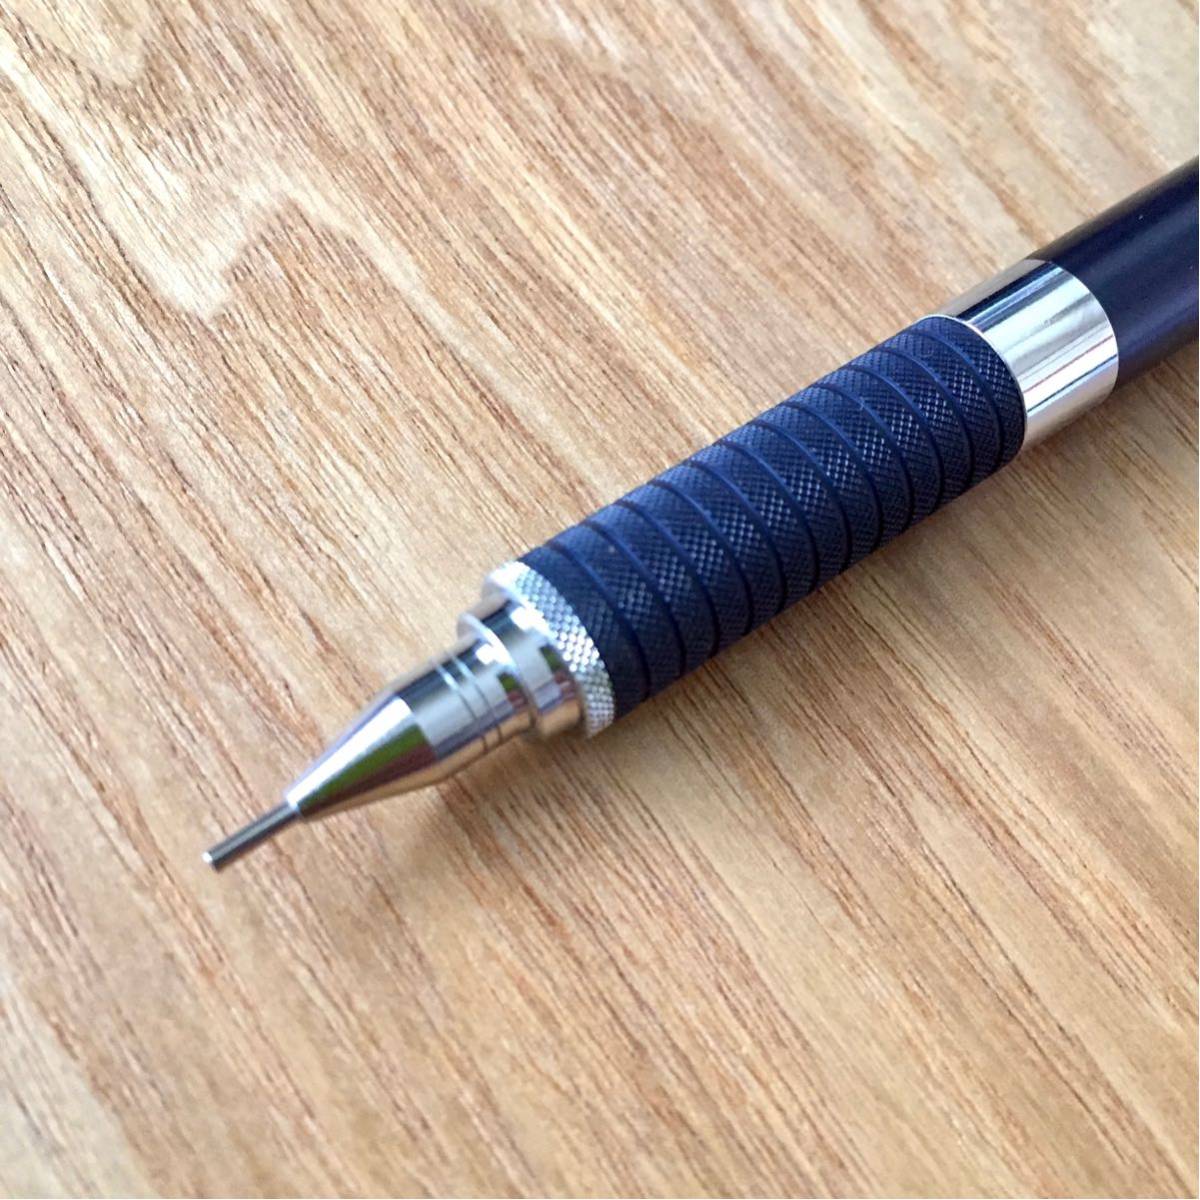 新品同様 STAEDTLER rOtring Mechanical pencil ステッドラー ロットリング シャーペン 2本セット 0.7mm MADE IN GERMANY ドイツプロダクツ_画像3